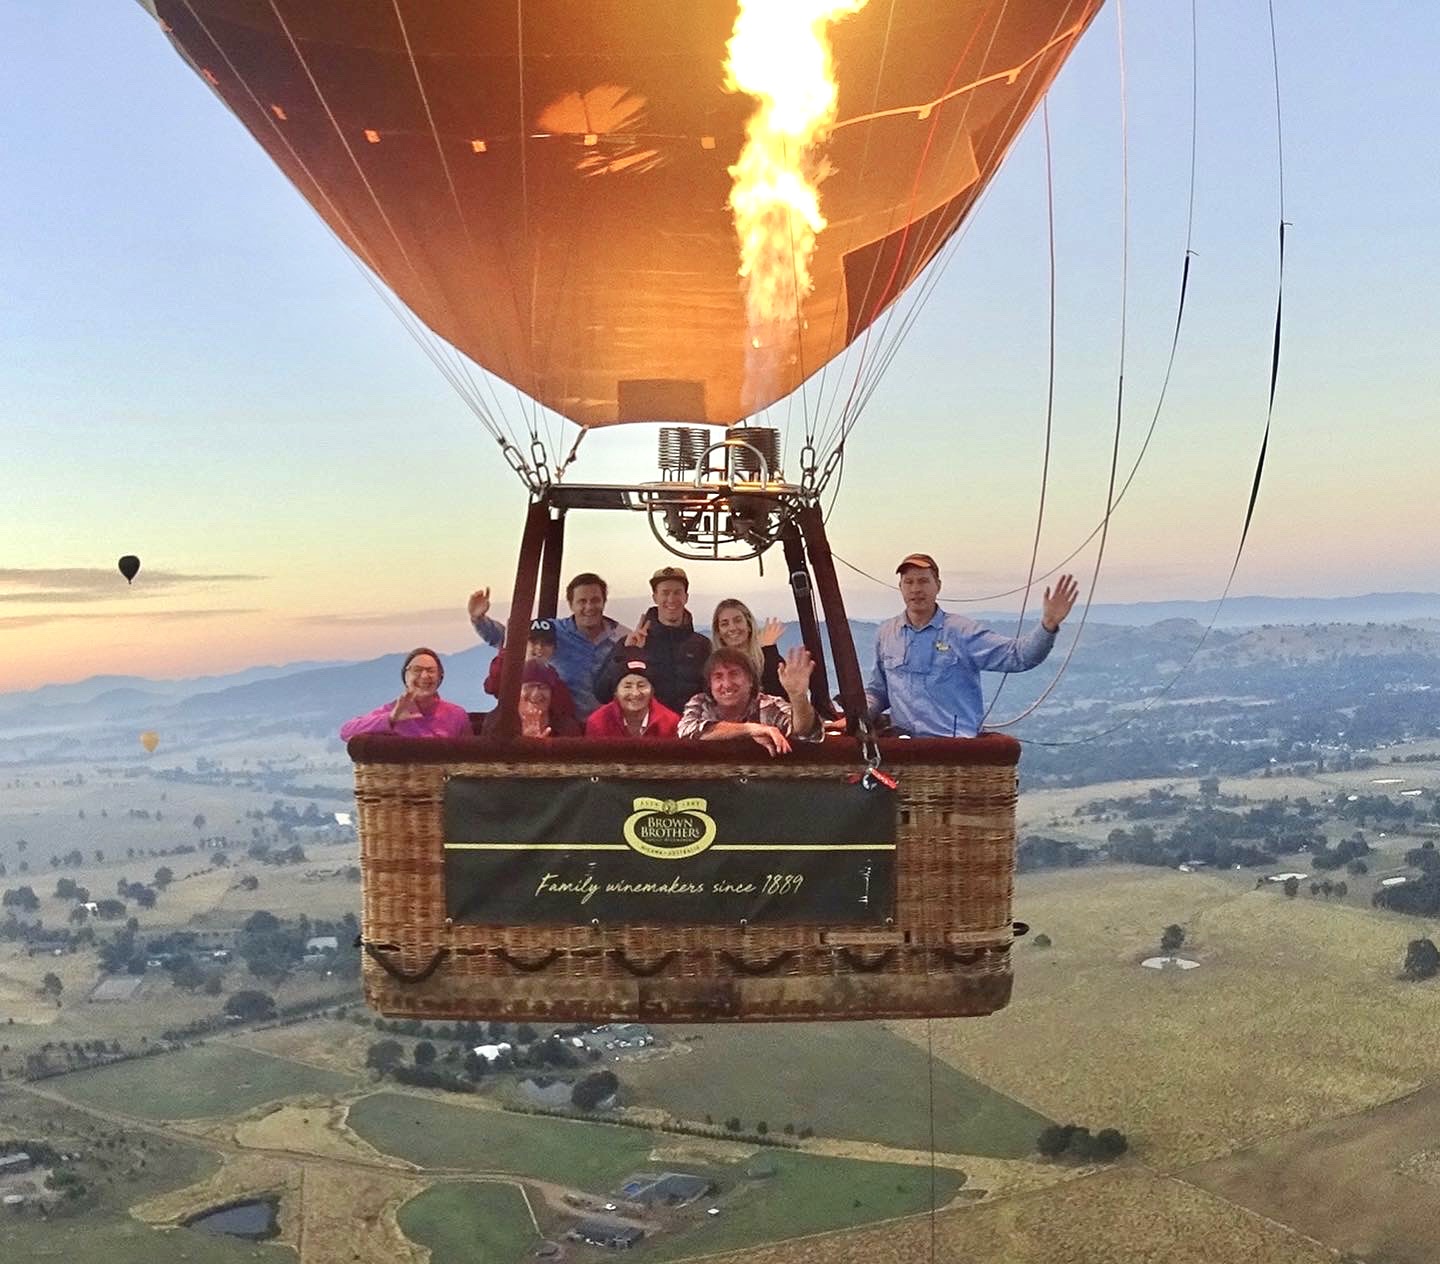 Mansfield Balloon Flight